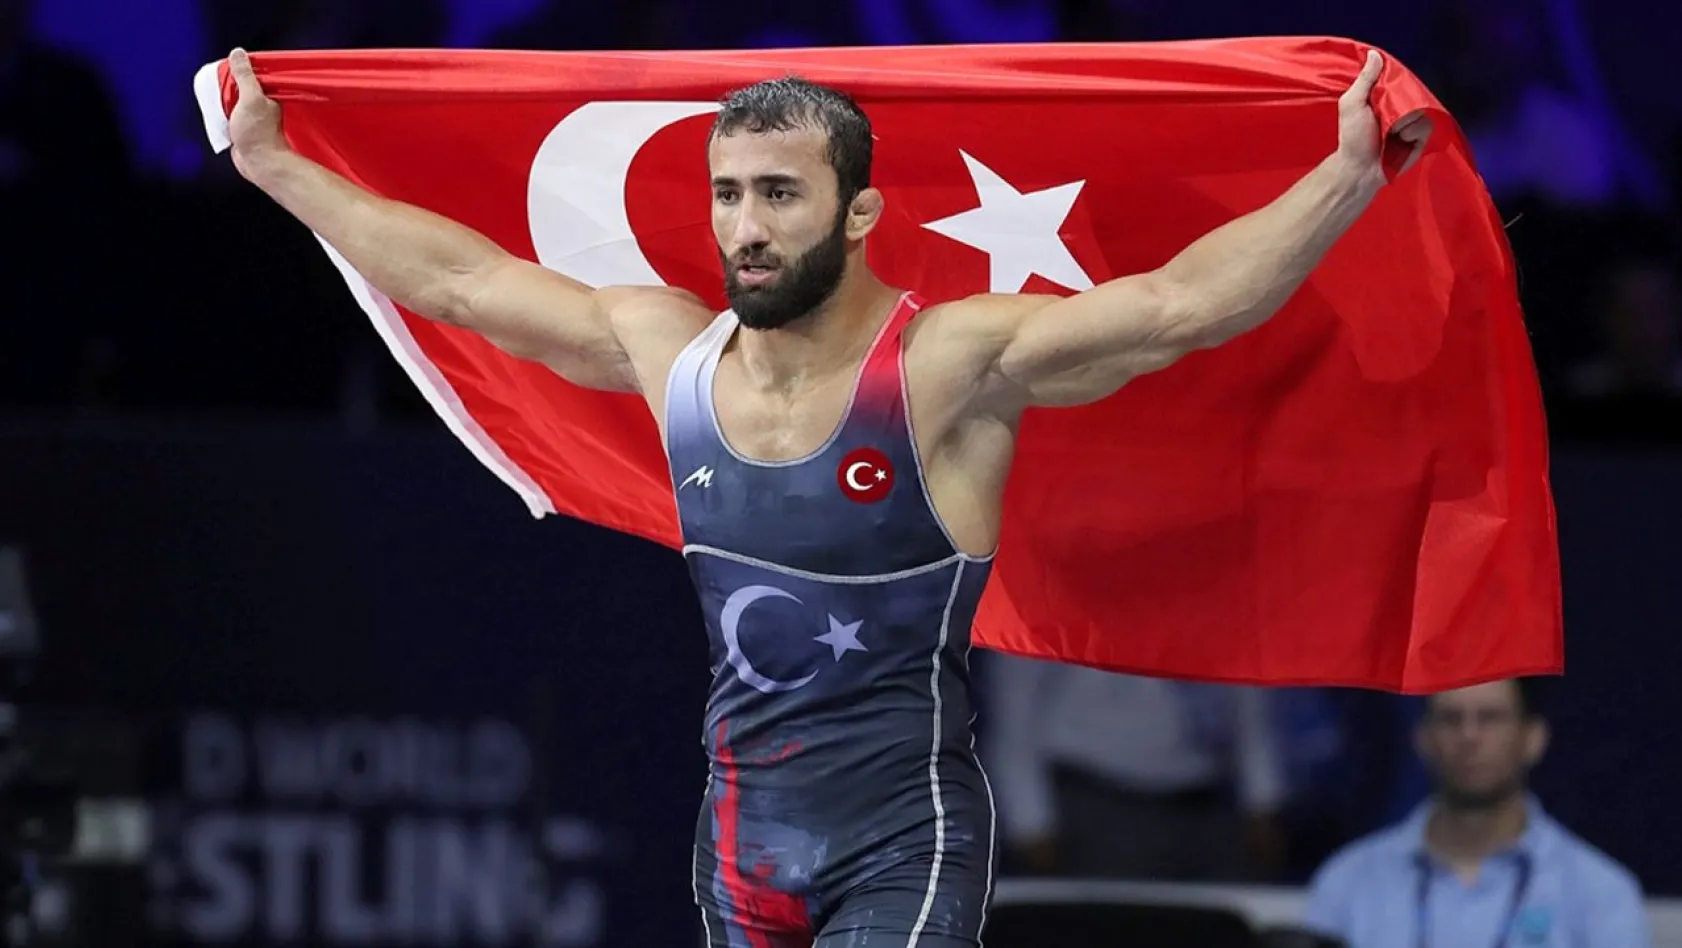 Milli güreşçi Burhan Akbudak, dünya şampiyonu oldu